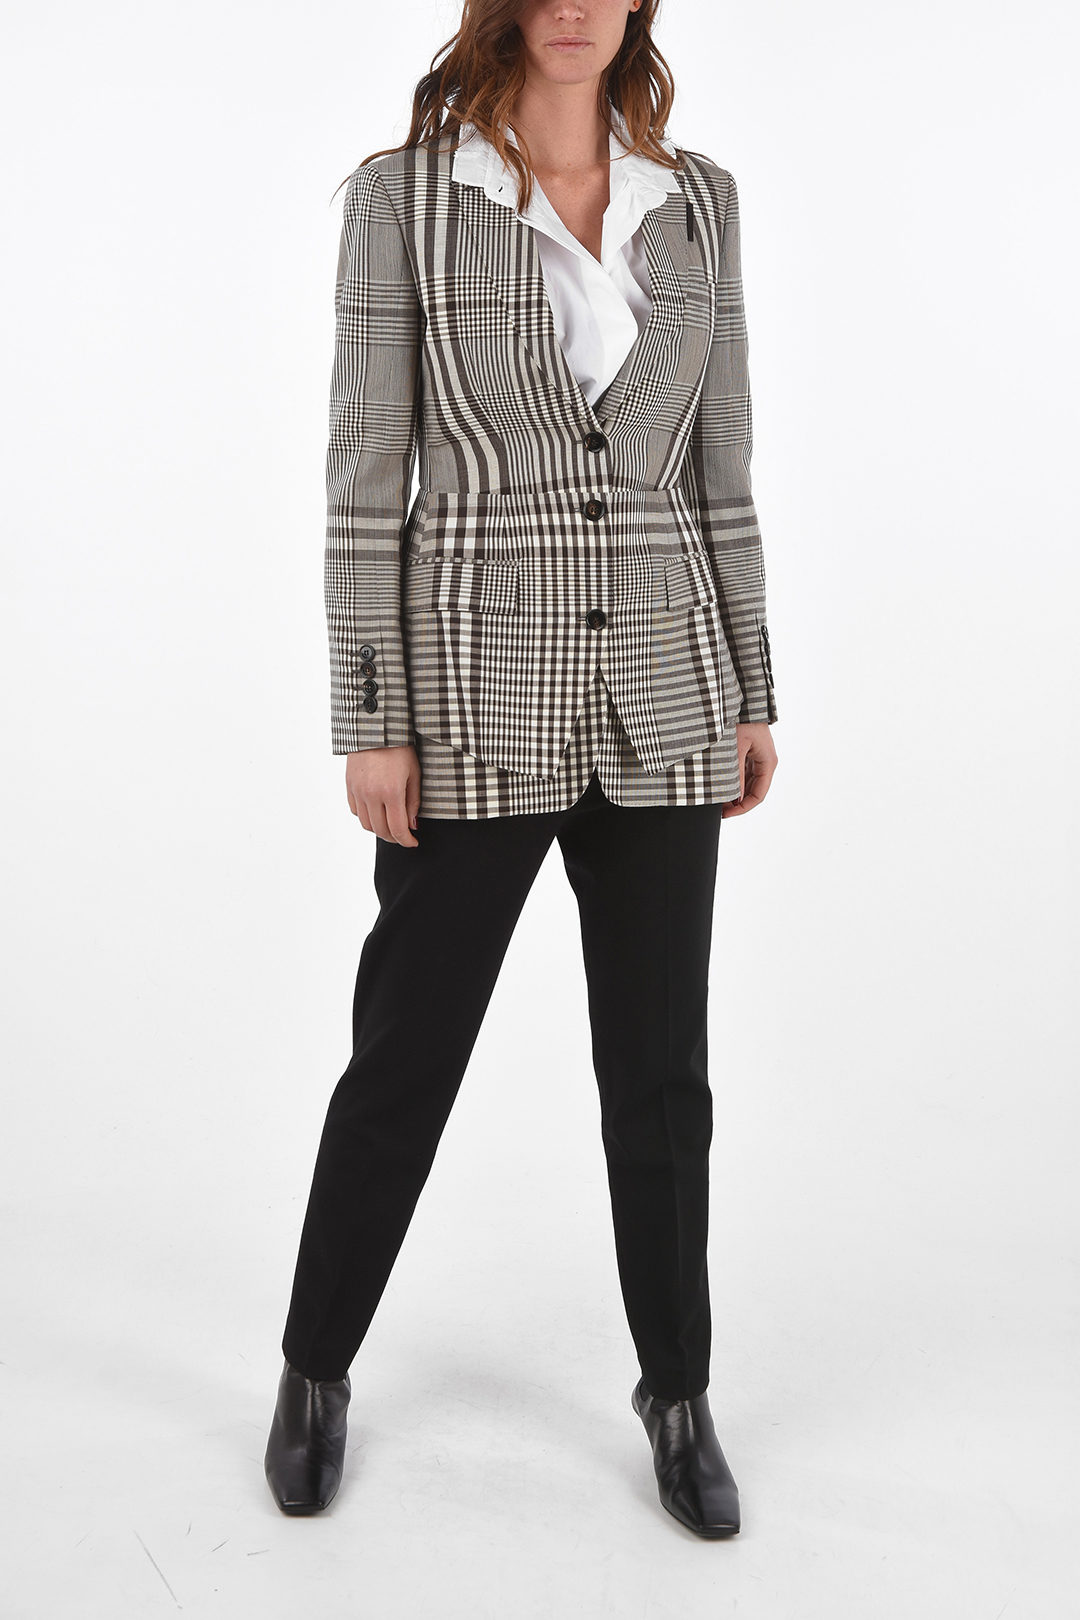 Belted Plaid Blazer & Louis Vuitton Scarf - Meagan's Moda